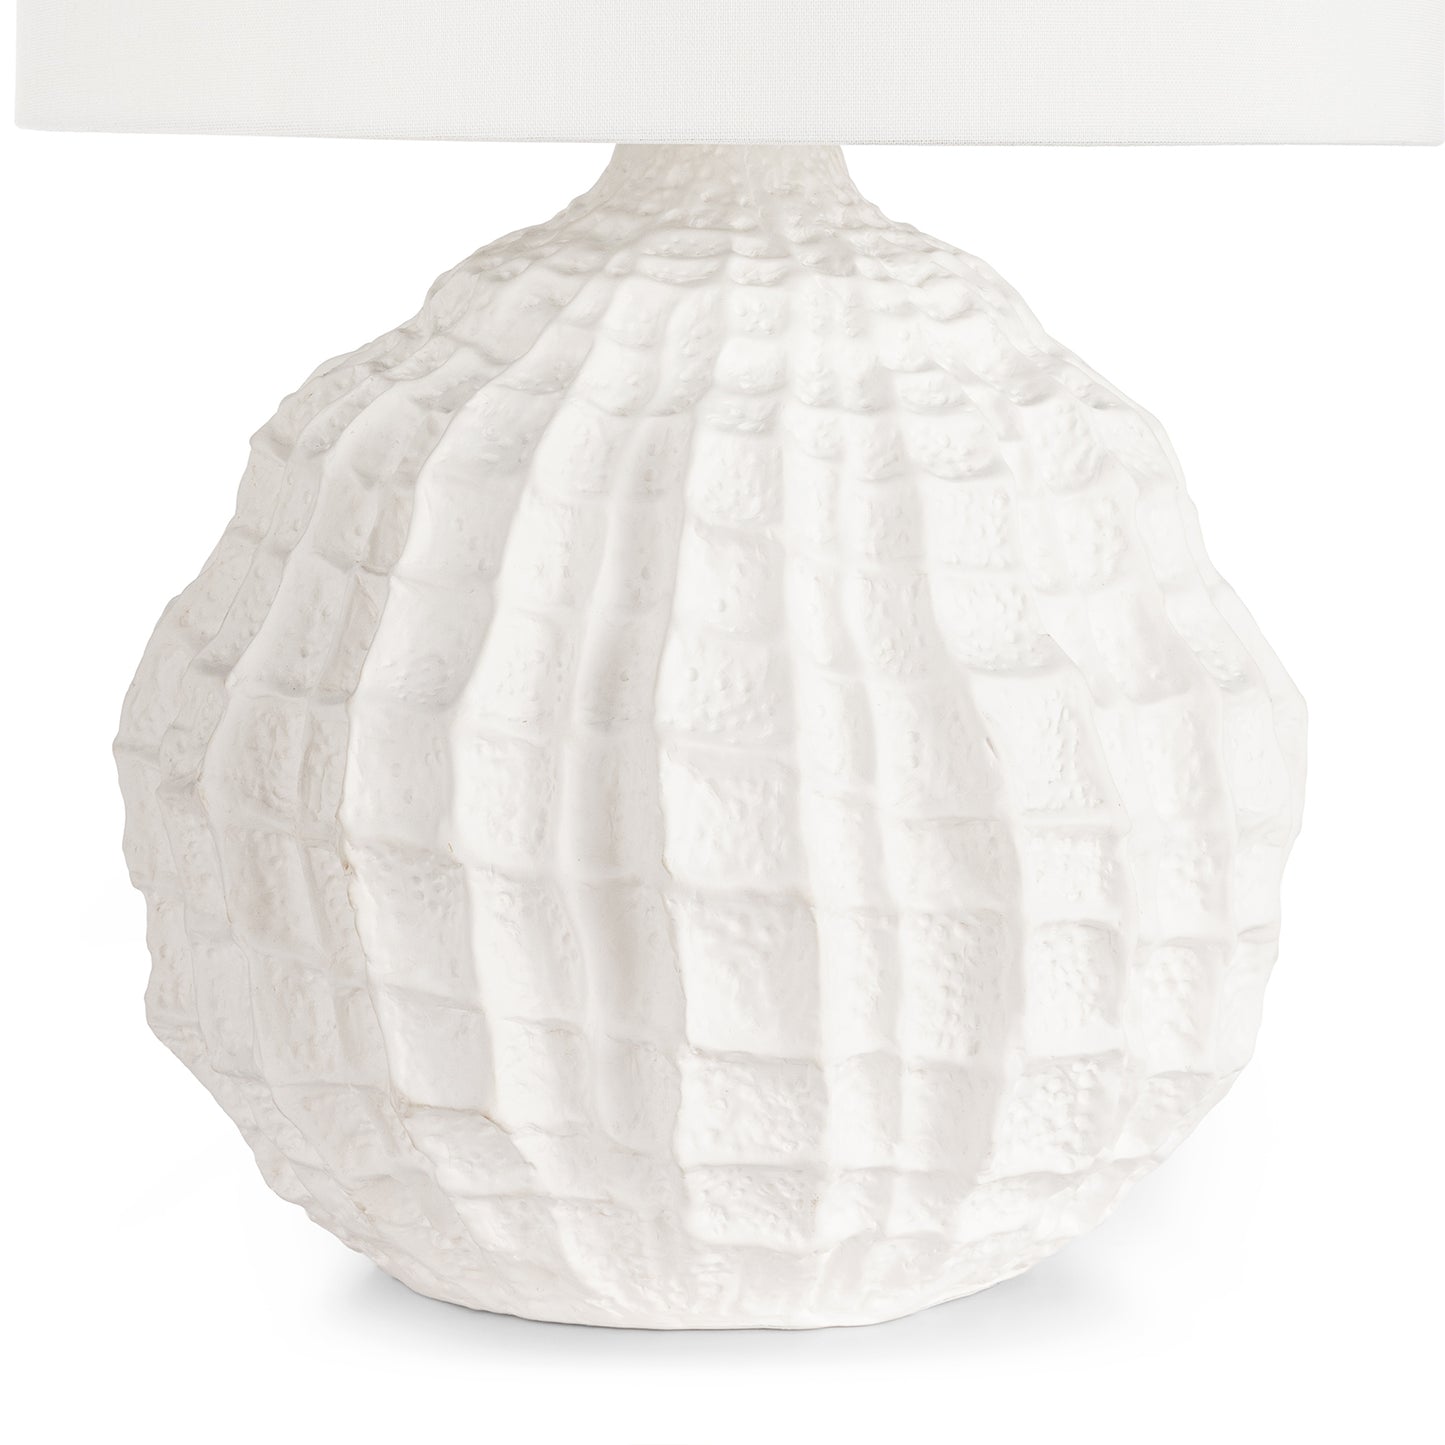 Regina Andrew Caspian Ceramic Table Lamp in White Large